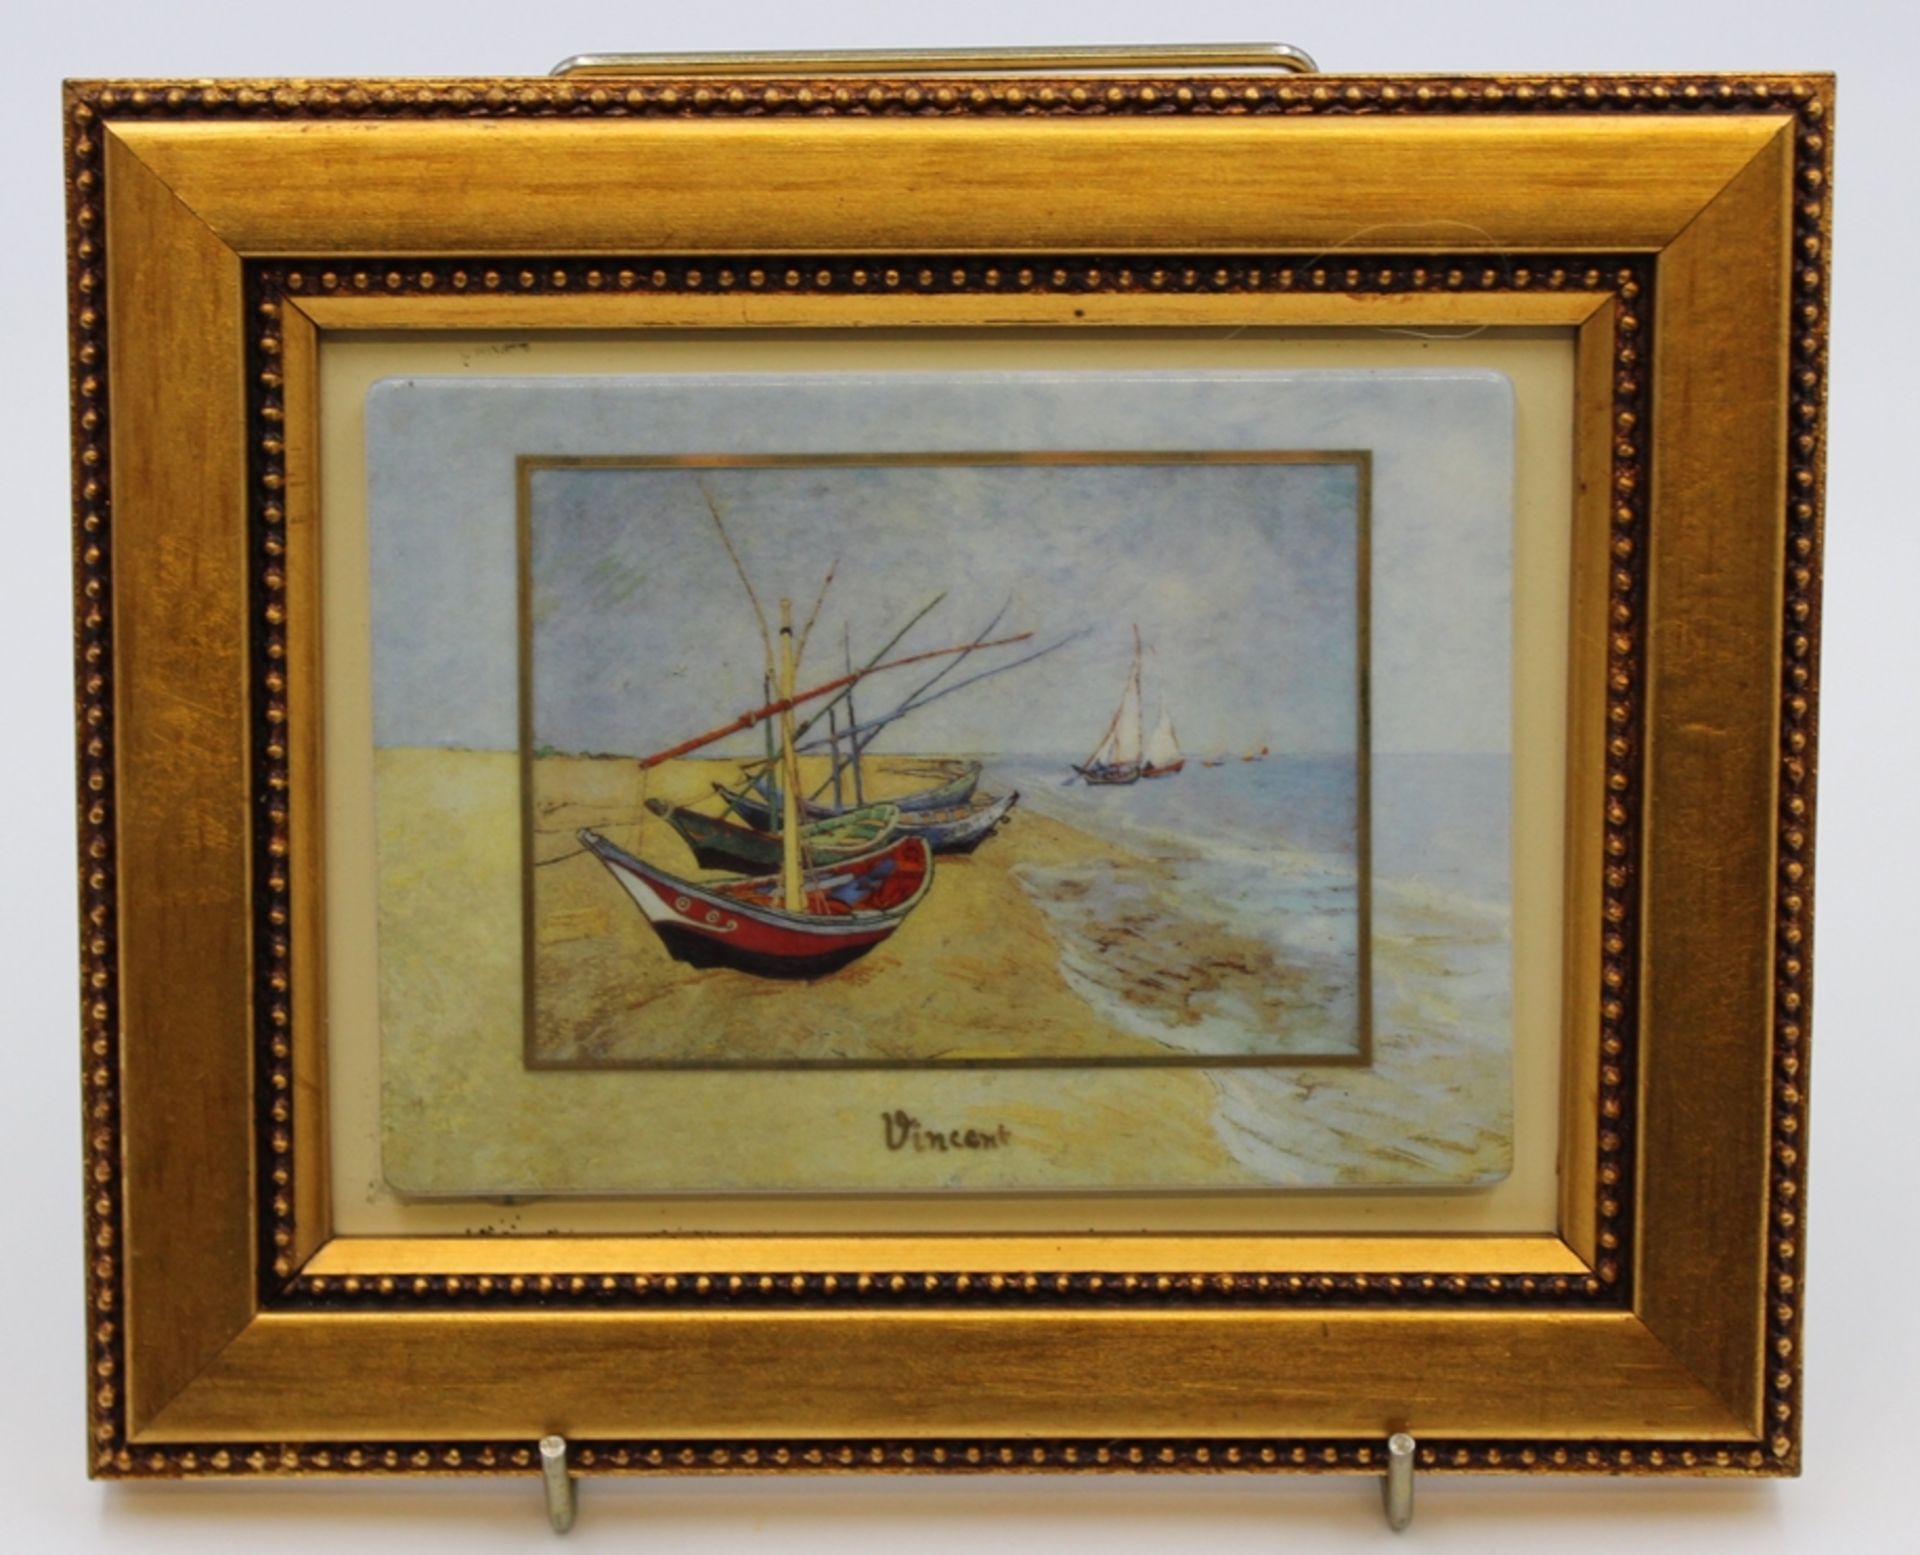 Bildplatte, Goebel, Artis-Orbis, Goebel, Vincent, gerahmt, RG 17,5 x 22cm. - Image 2 of 3